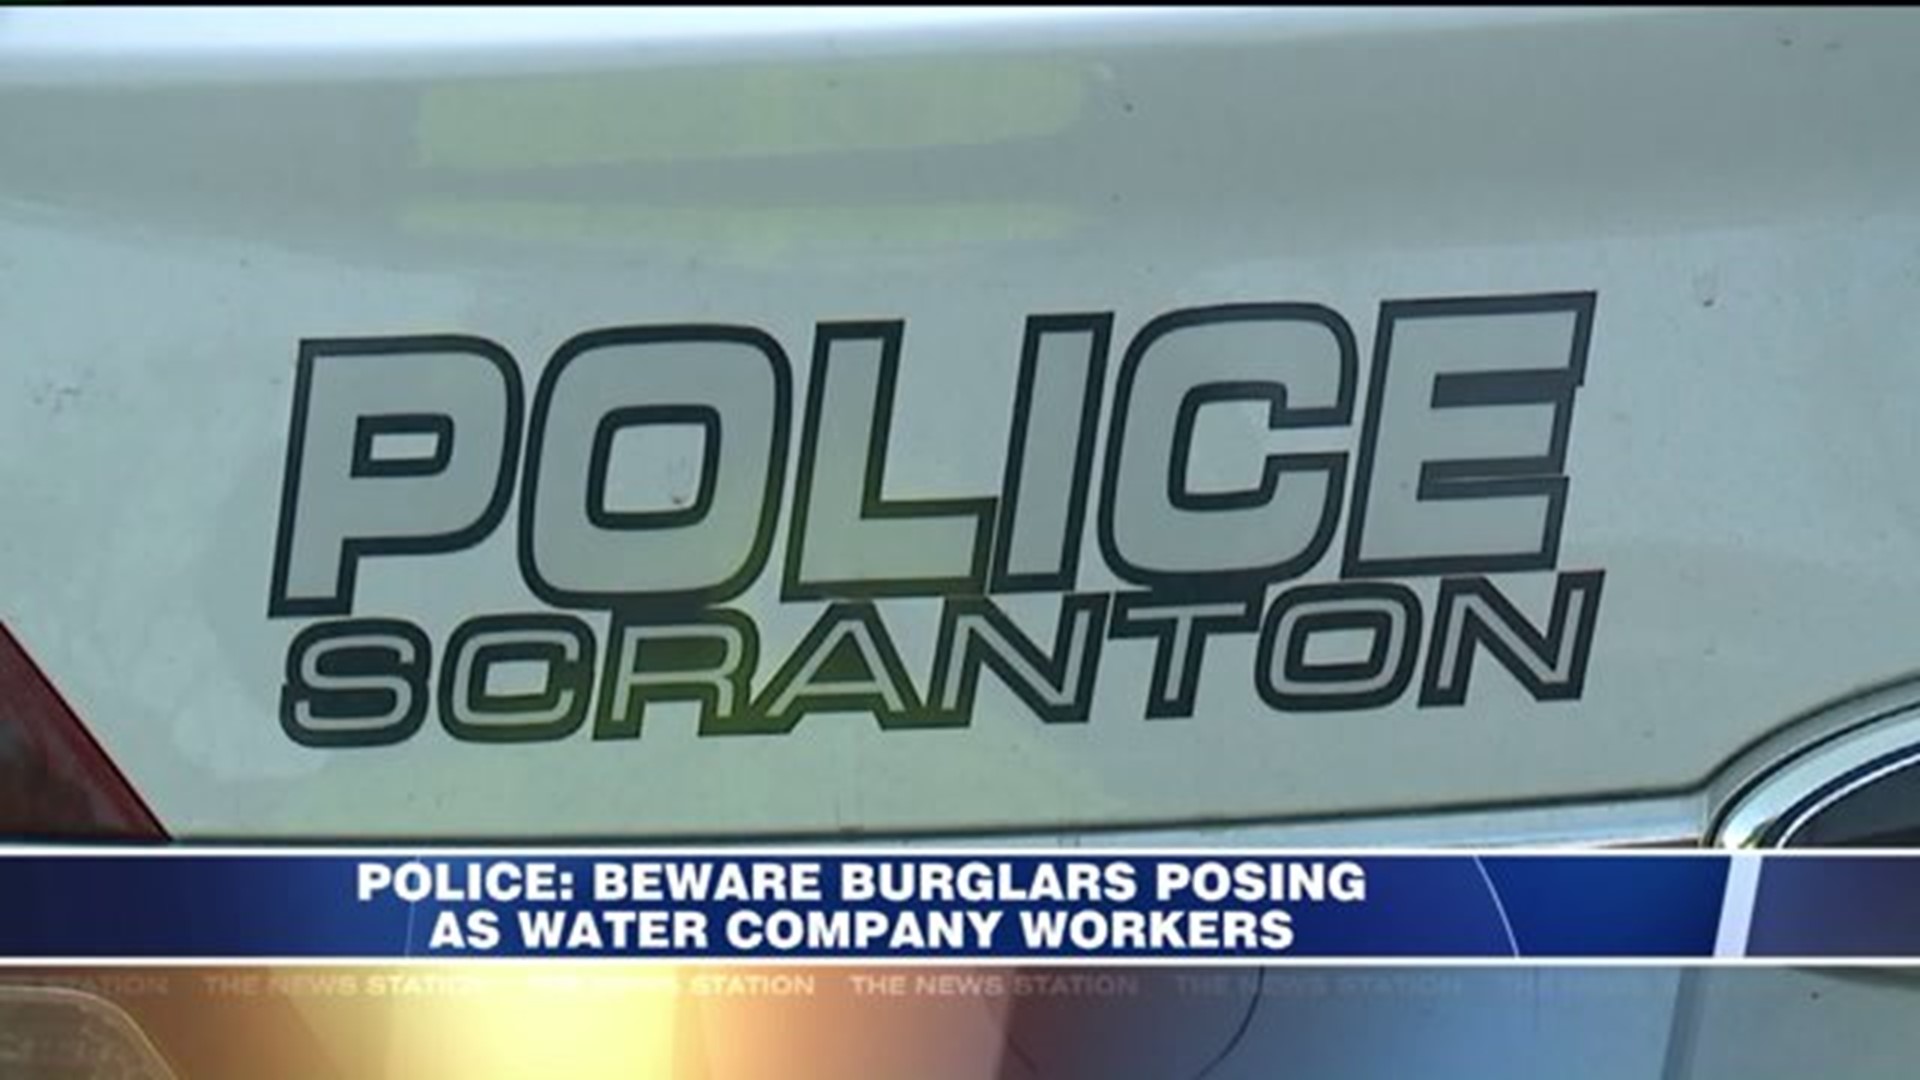 Police: Beware Burglars Posing as Water Company Workers